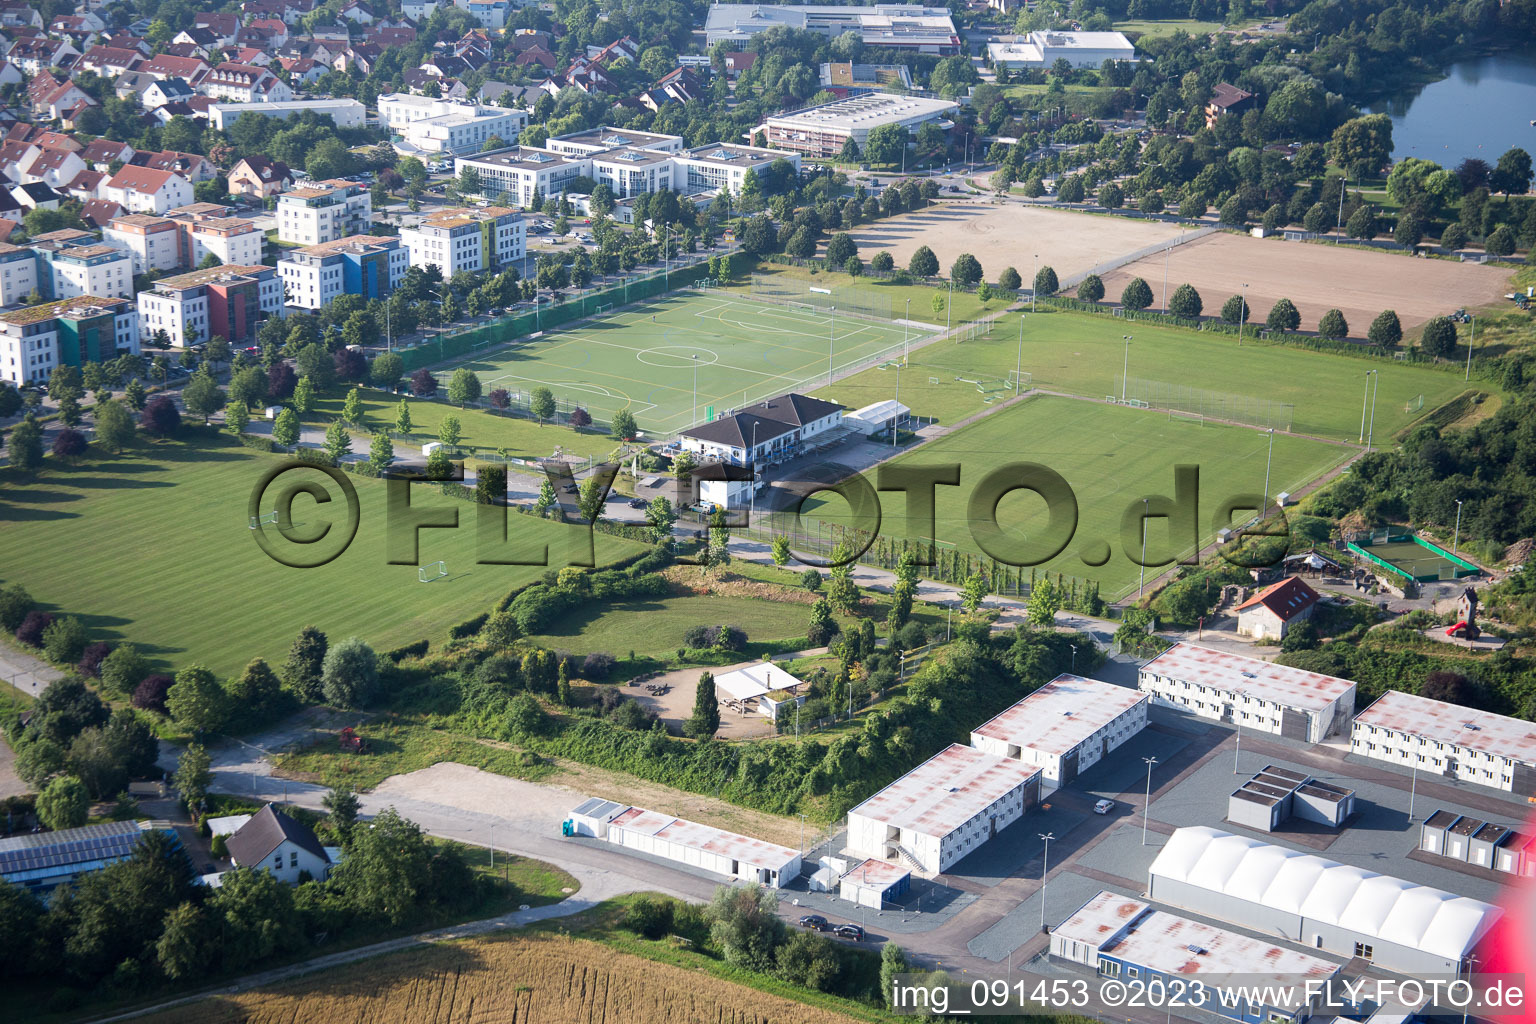 Bensheim im Bundesland Hessen, Deutschland aus der Luft betrachtet